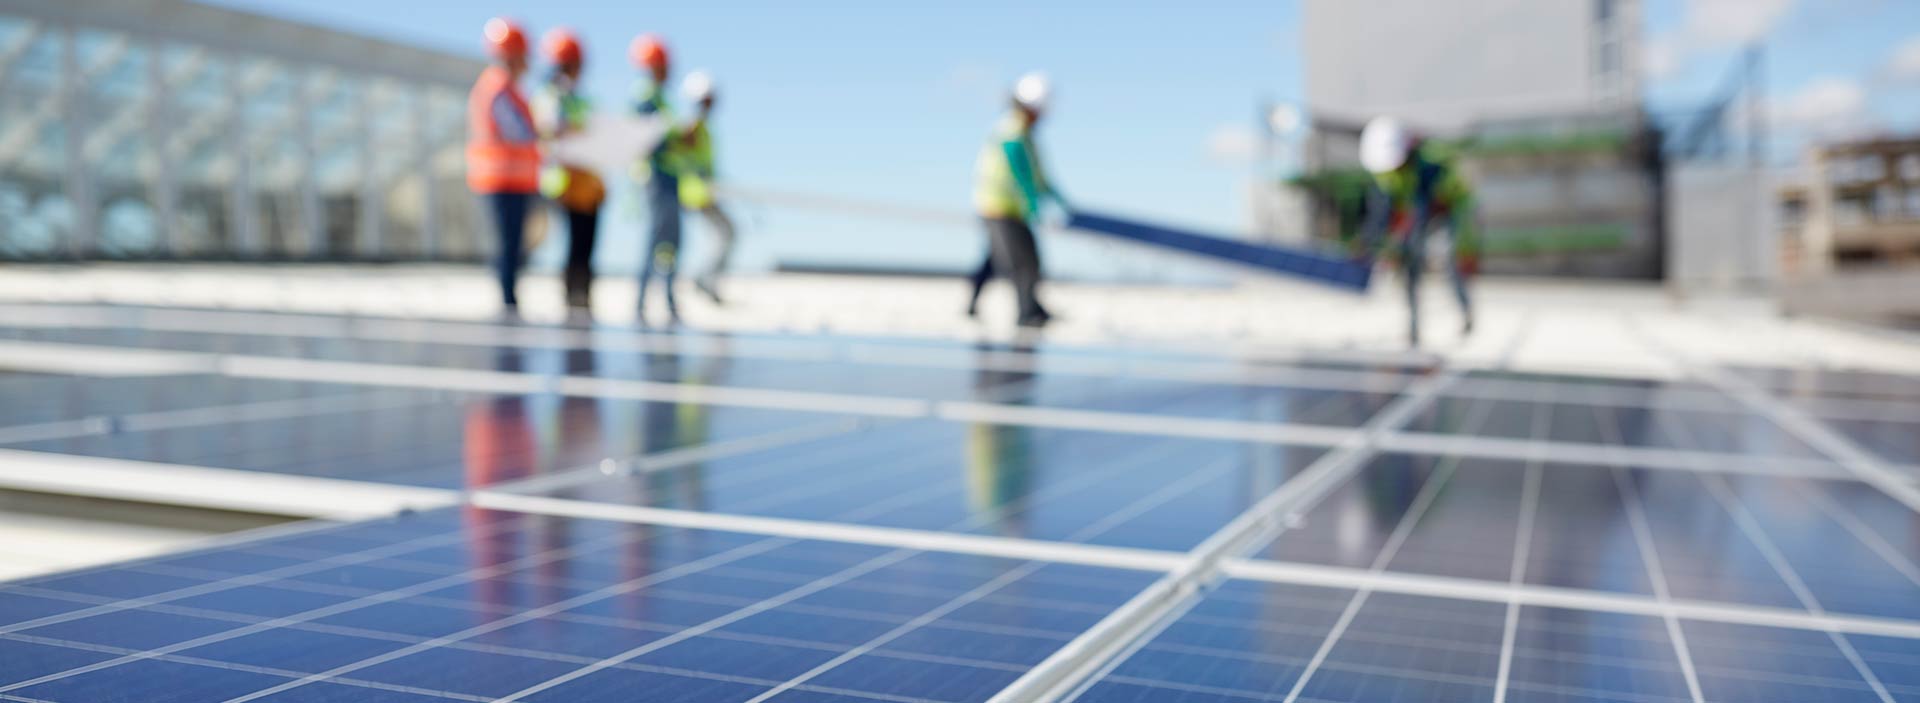 Solcellstekniker monterar solpaneler på tak.